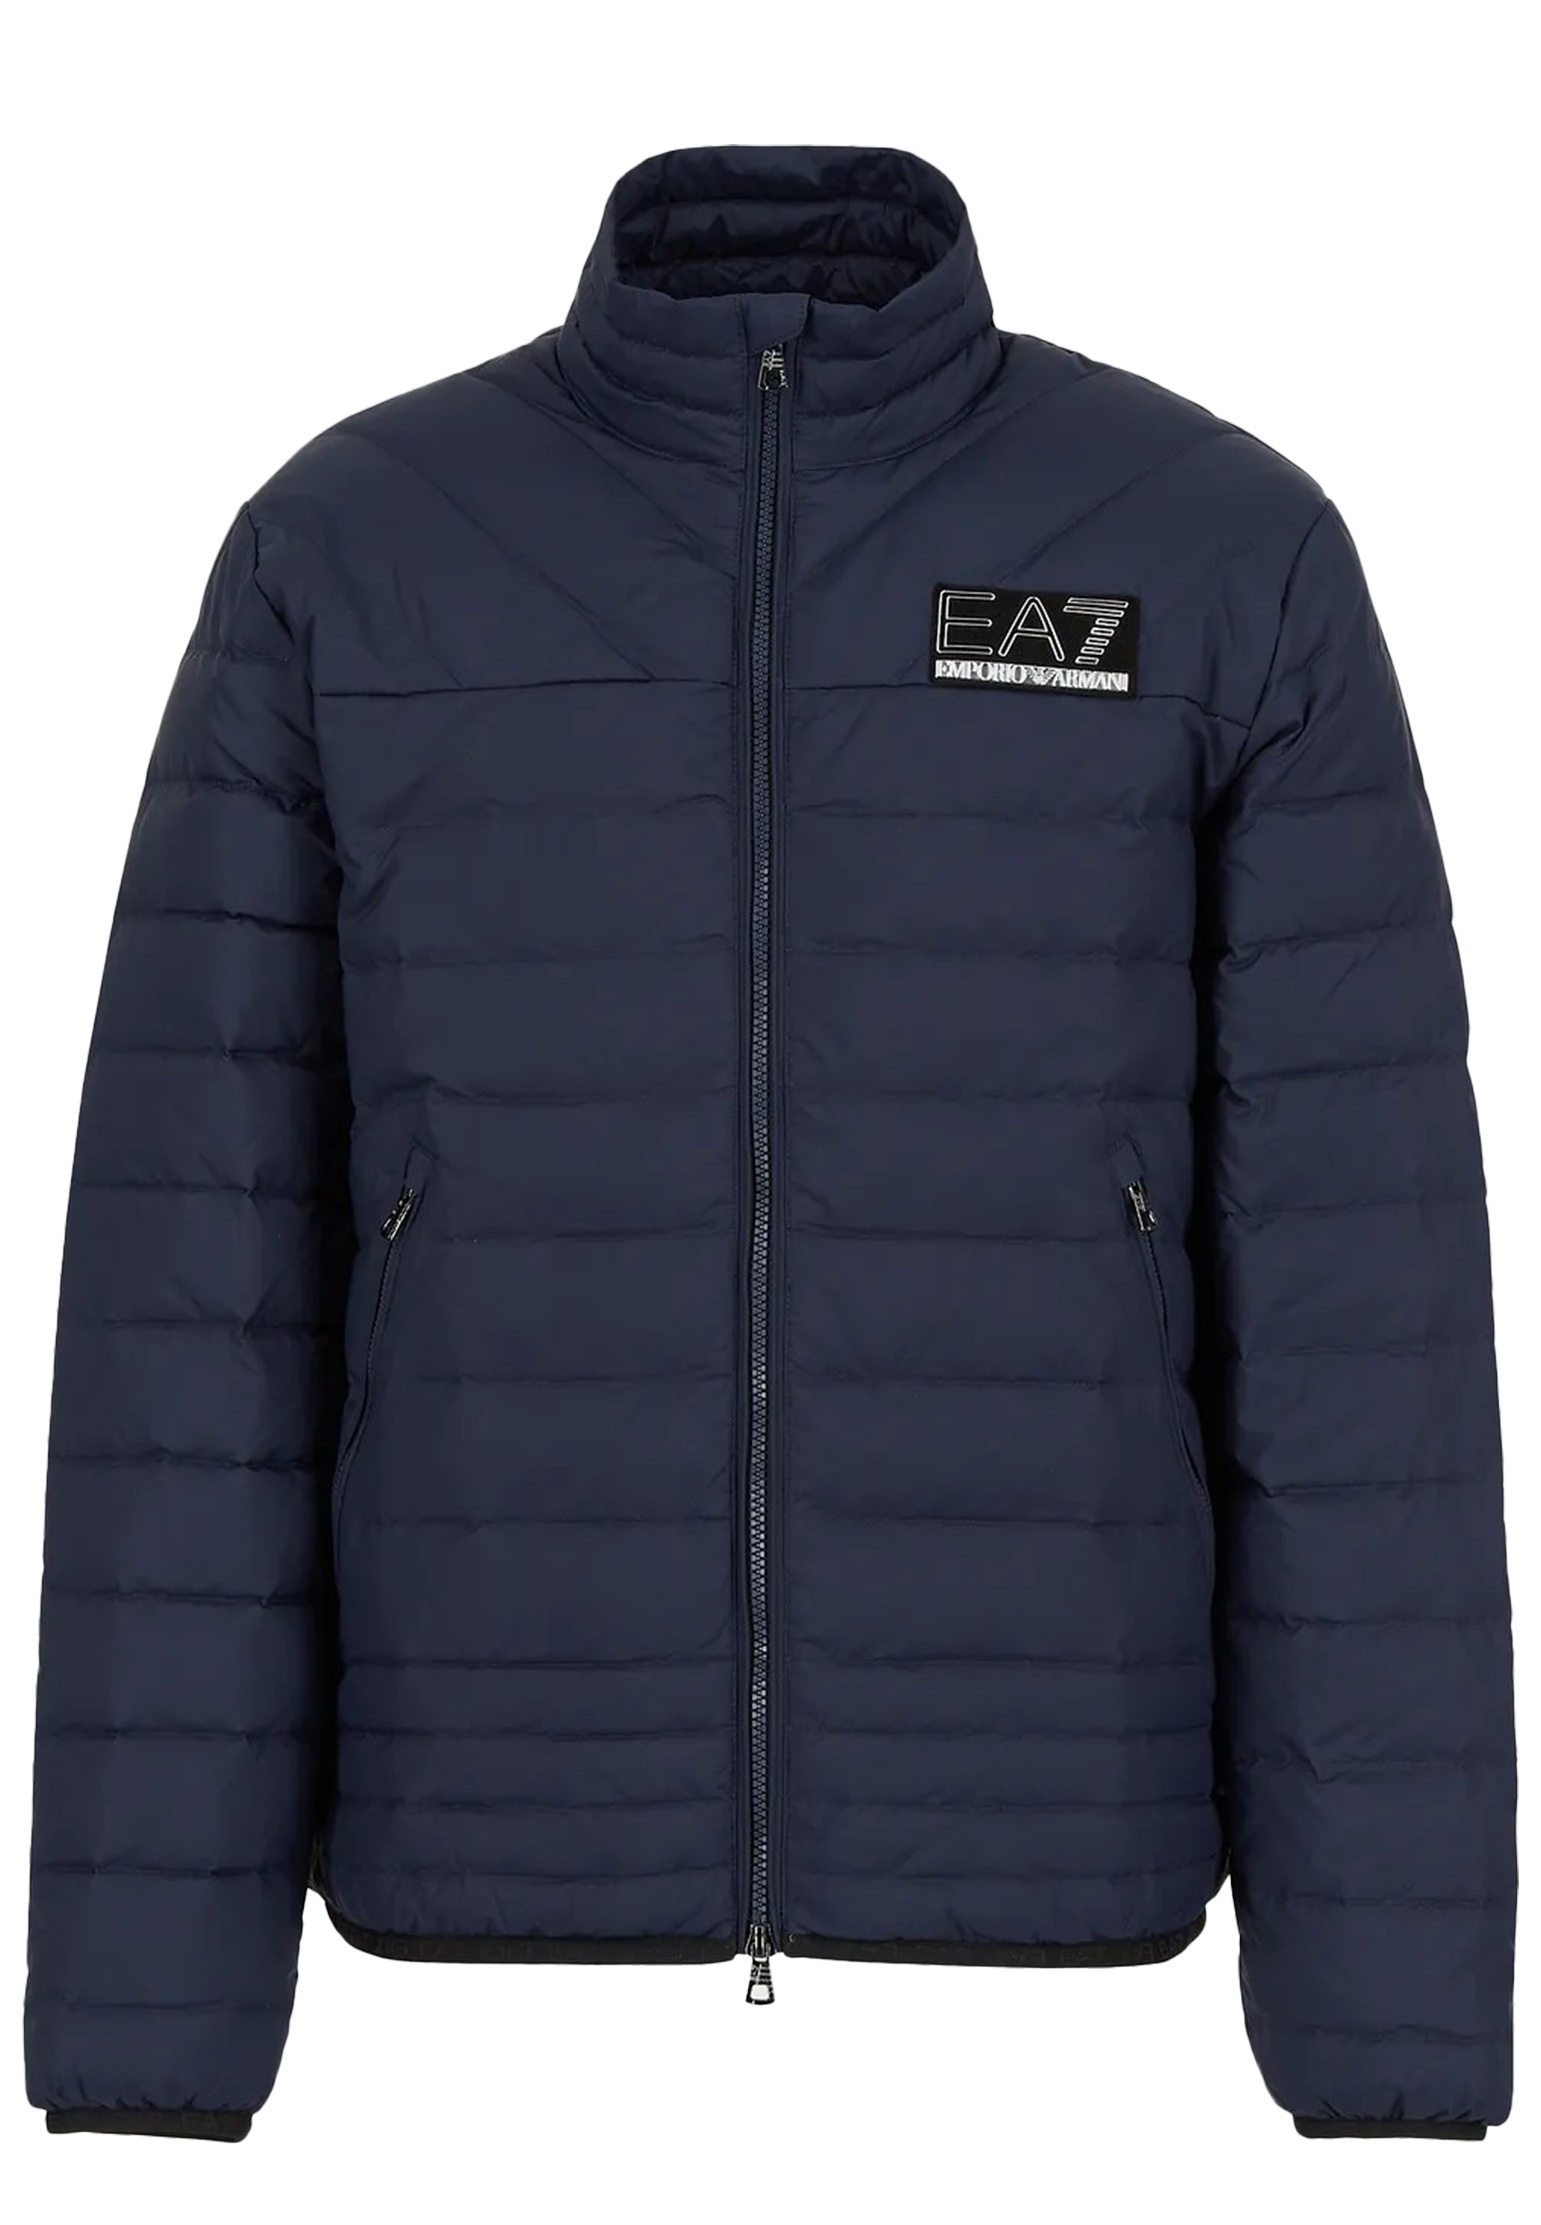 Зимняя куртка мужская EA7 134707 синяя S